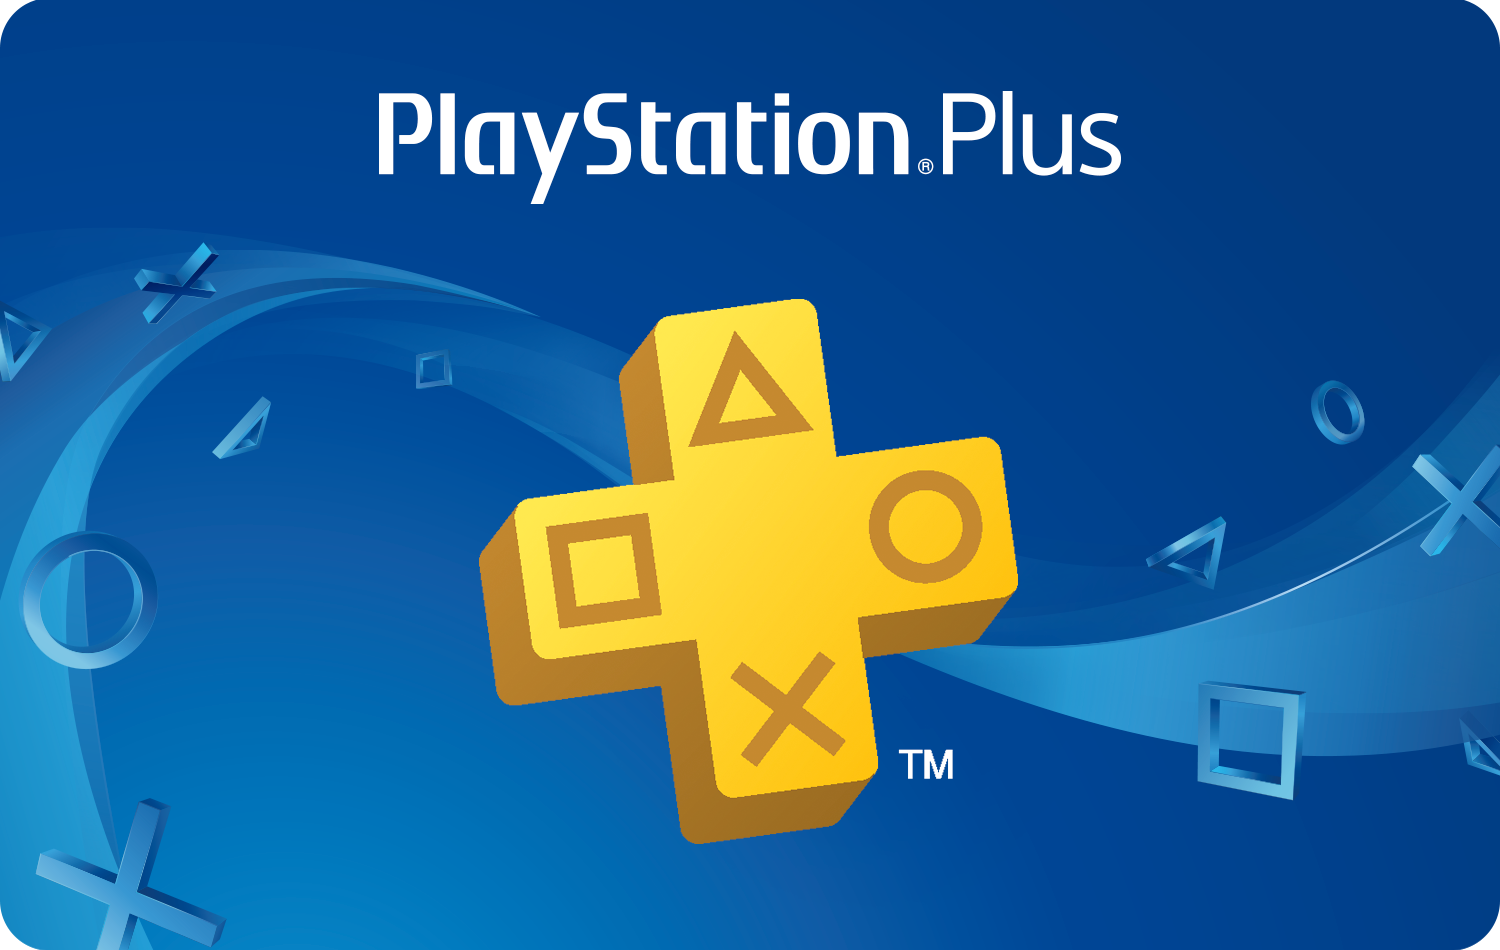 PlayStation : des comptes suspendus sans aucune raison, que se passe-t-il chez Sony ?